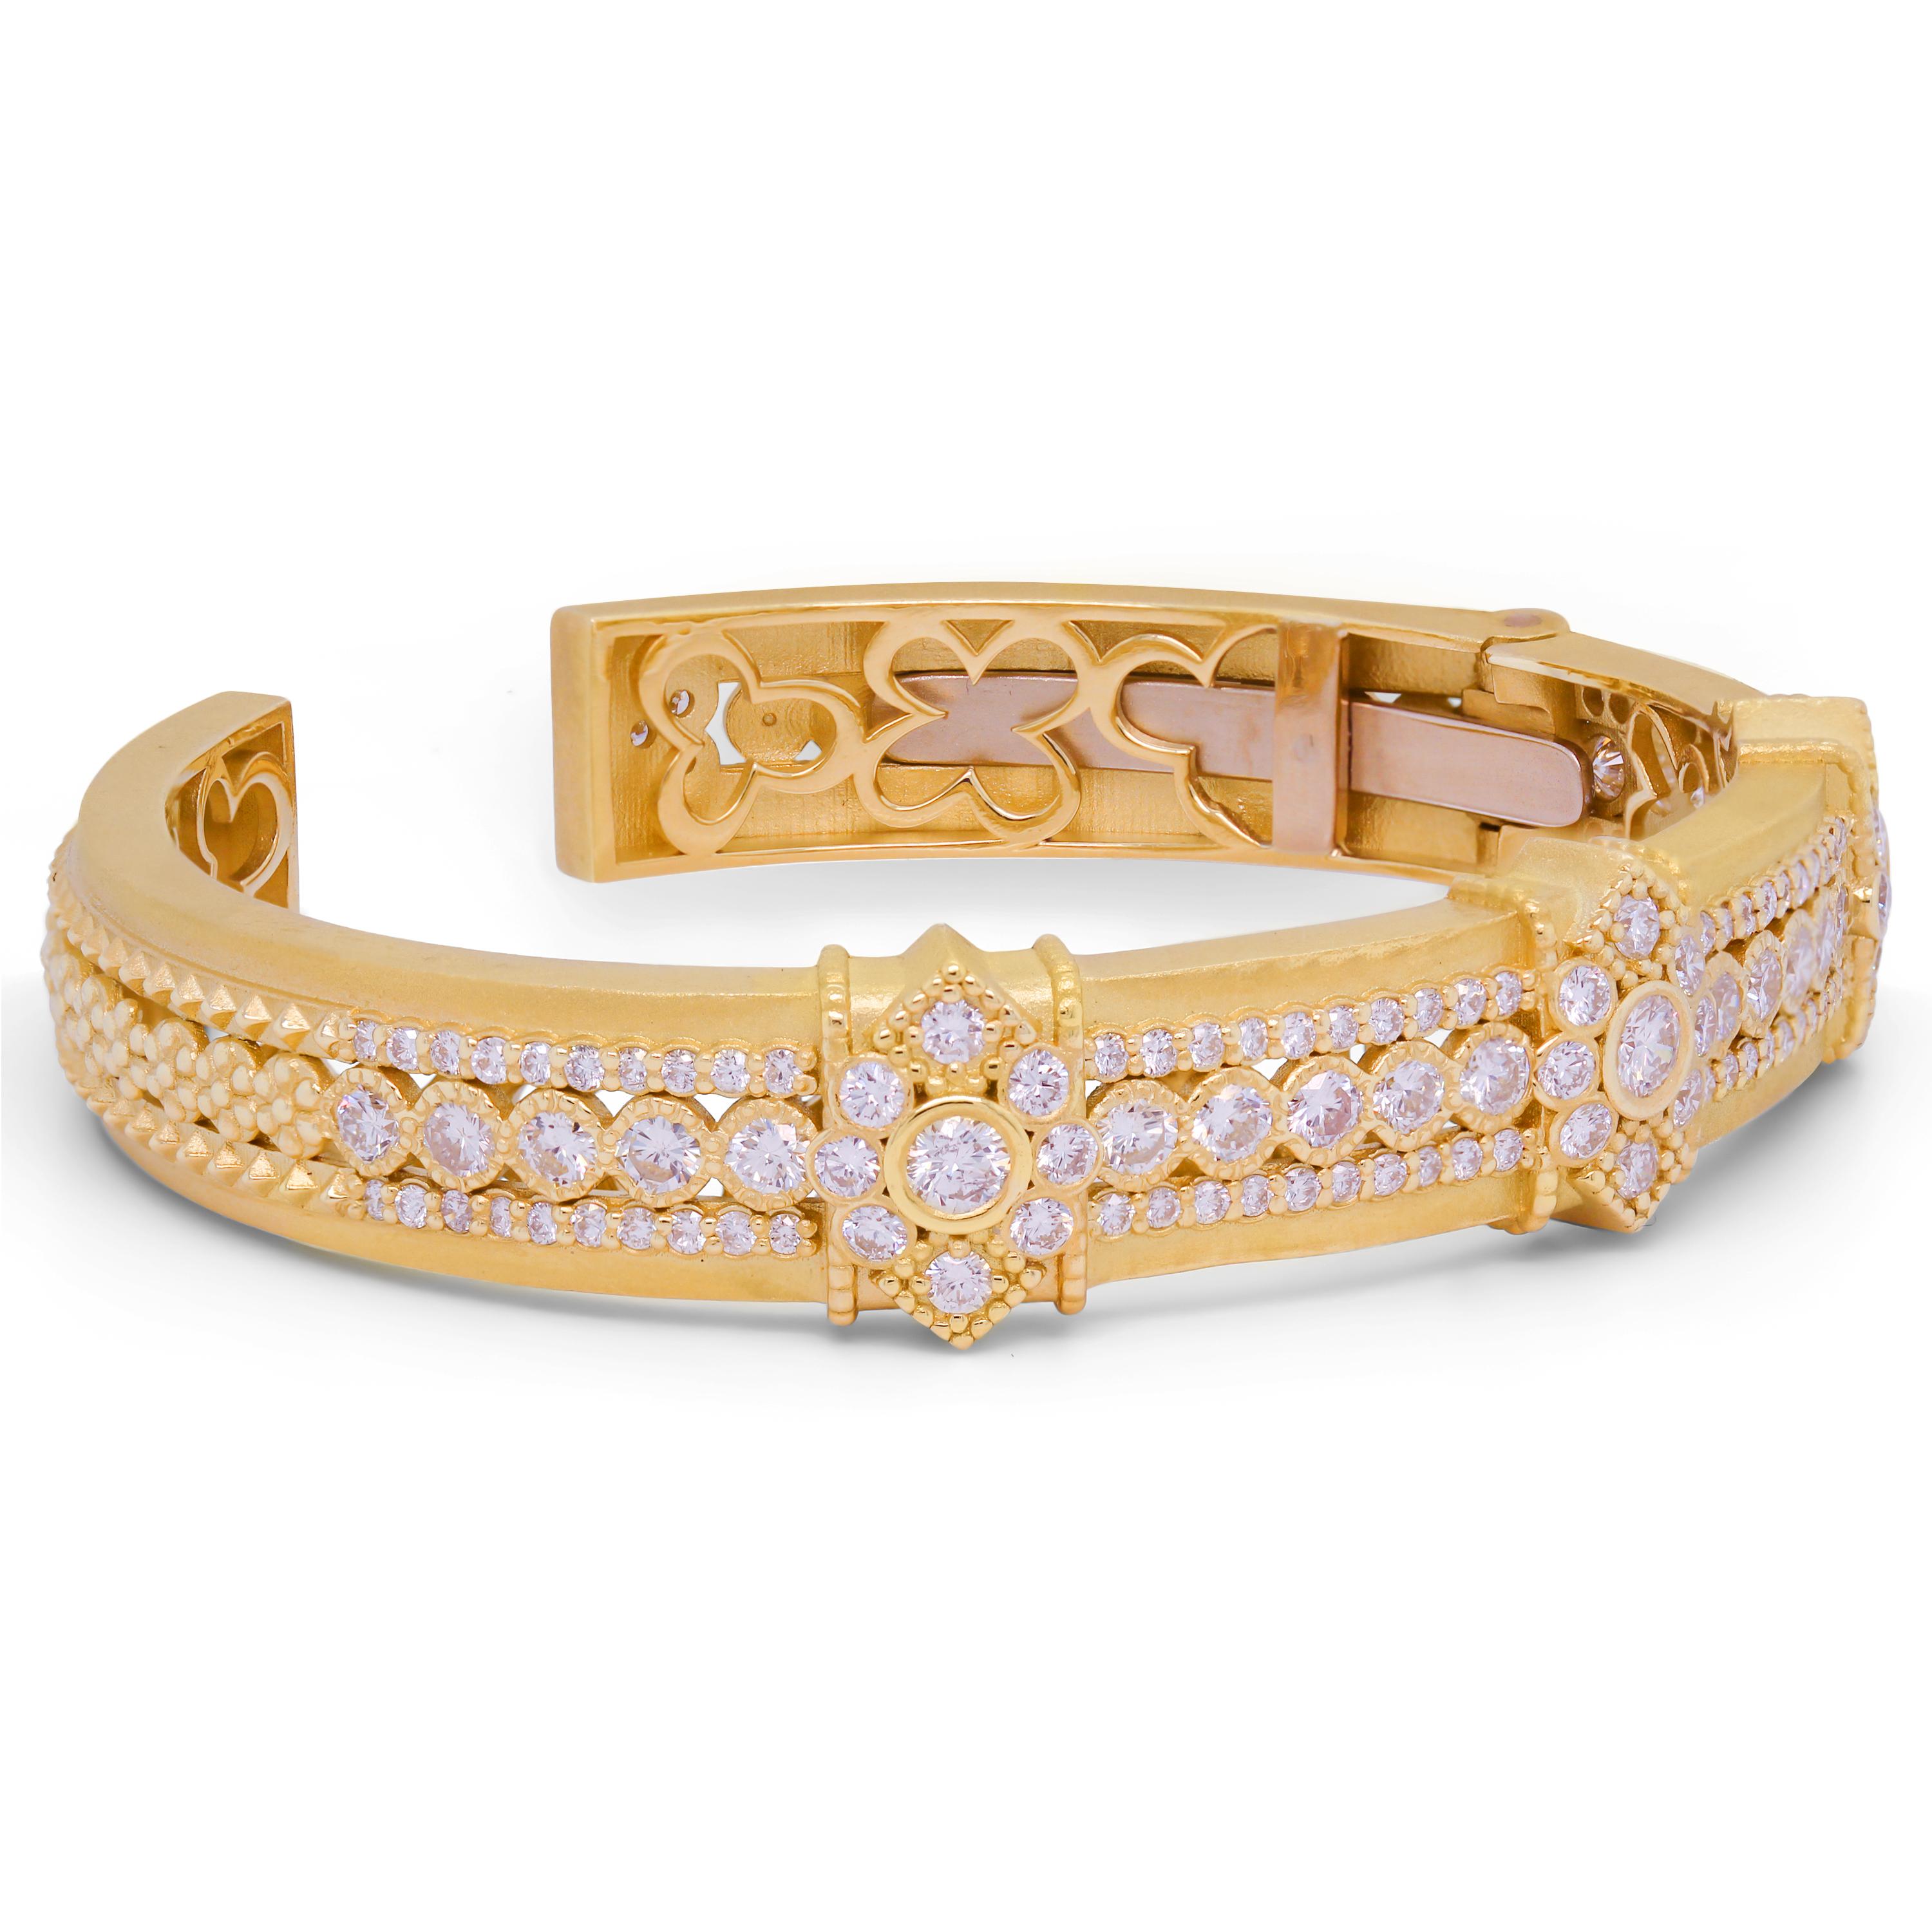 Stambolian Bracelet jonc en or jaune 18 carats et diamants

Ce bracelet de pointe, fabriqué à la main, met en valeur le savoir-faire et le design tout au long de la pièce. Des diamants sont sertis sur presque tous les éléments de ce bracelet.